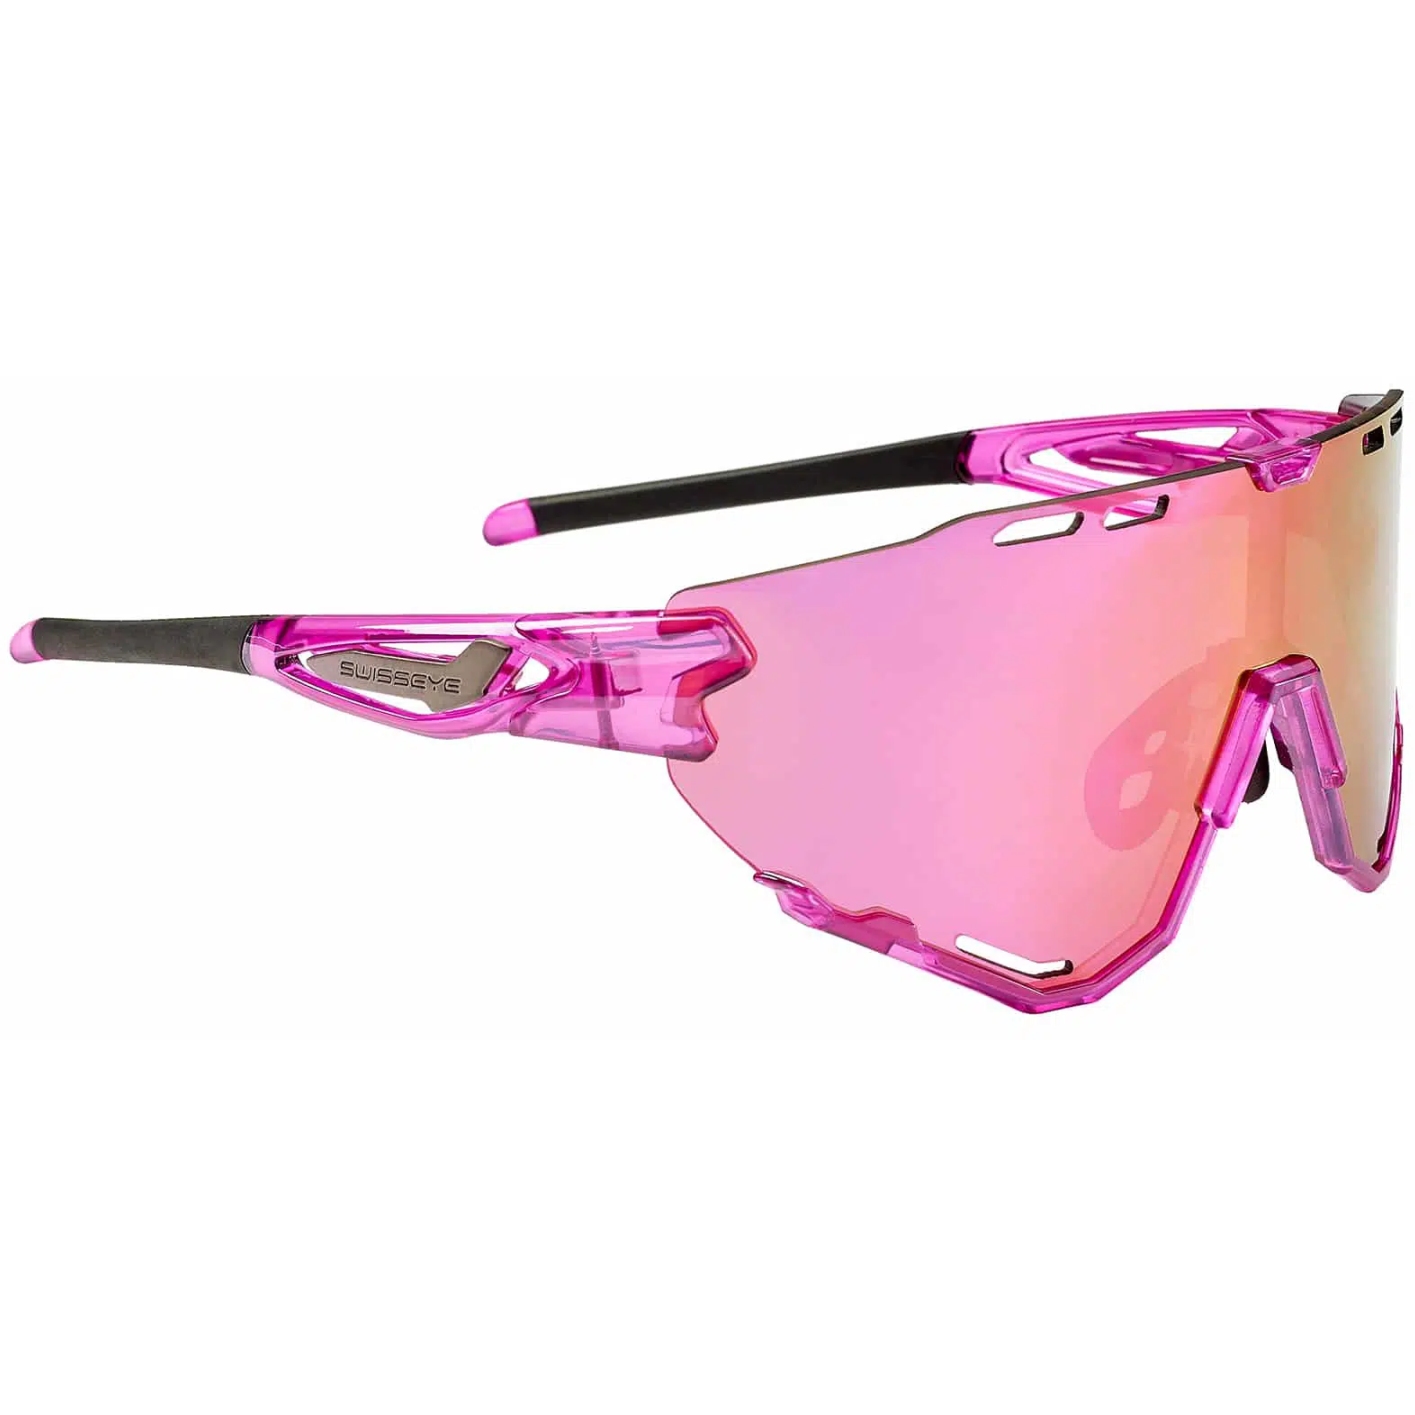 Produktbild von Swiss Eye Mantra Brille - Shiny Laser Pink - Smoke Pink Revo 13024